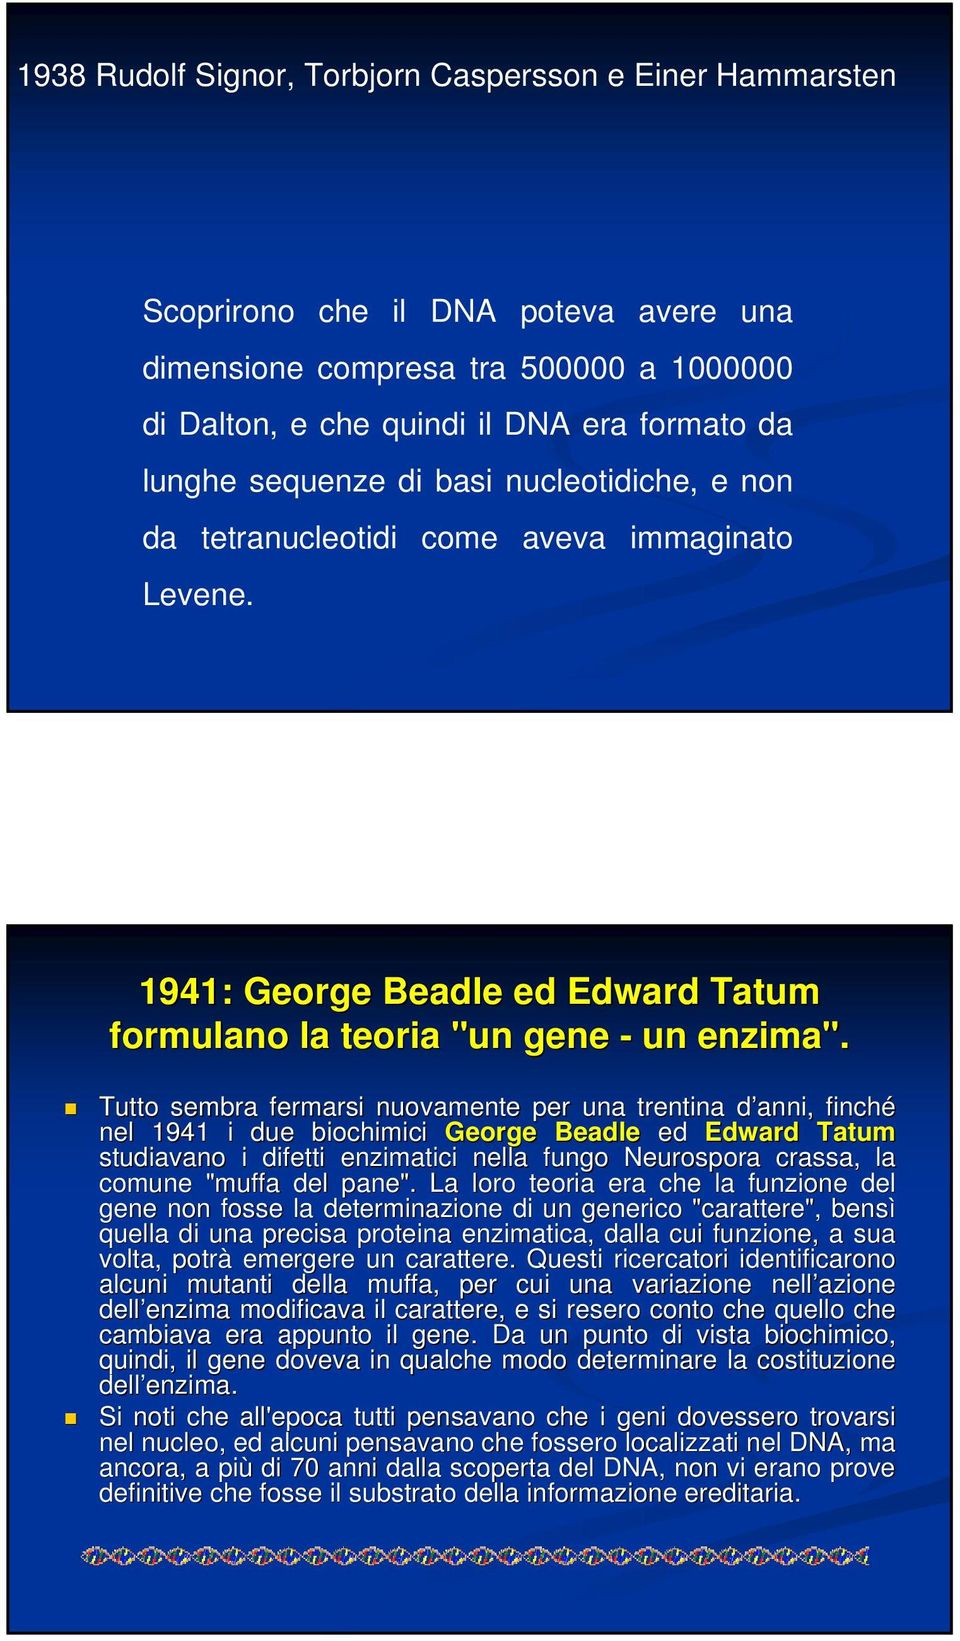 Tutto sembra fermarsi nuovamente per una trentina d anni, d finché nel 1941 i due biochimici George Beadle ed Edward Tatum studiavano i difetti enzimatici nella fungo Neurospora crassa, la l comune